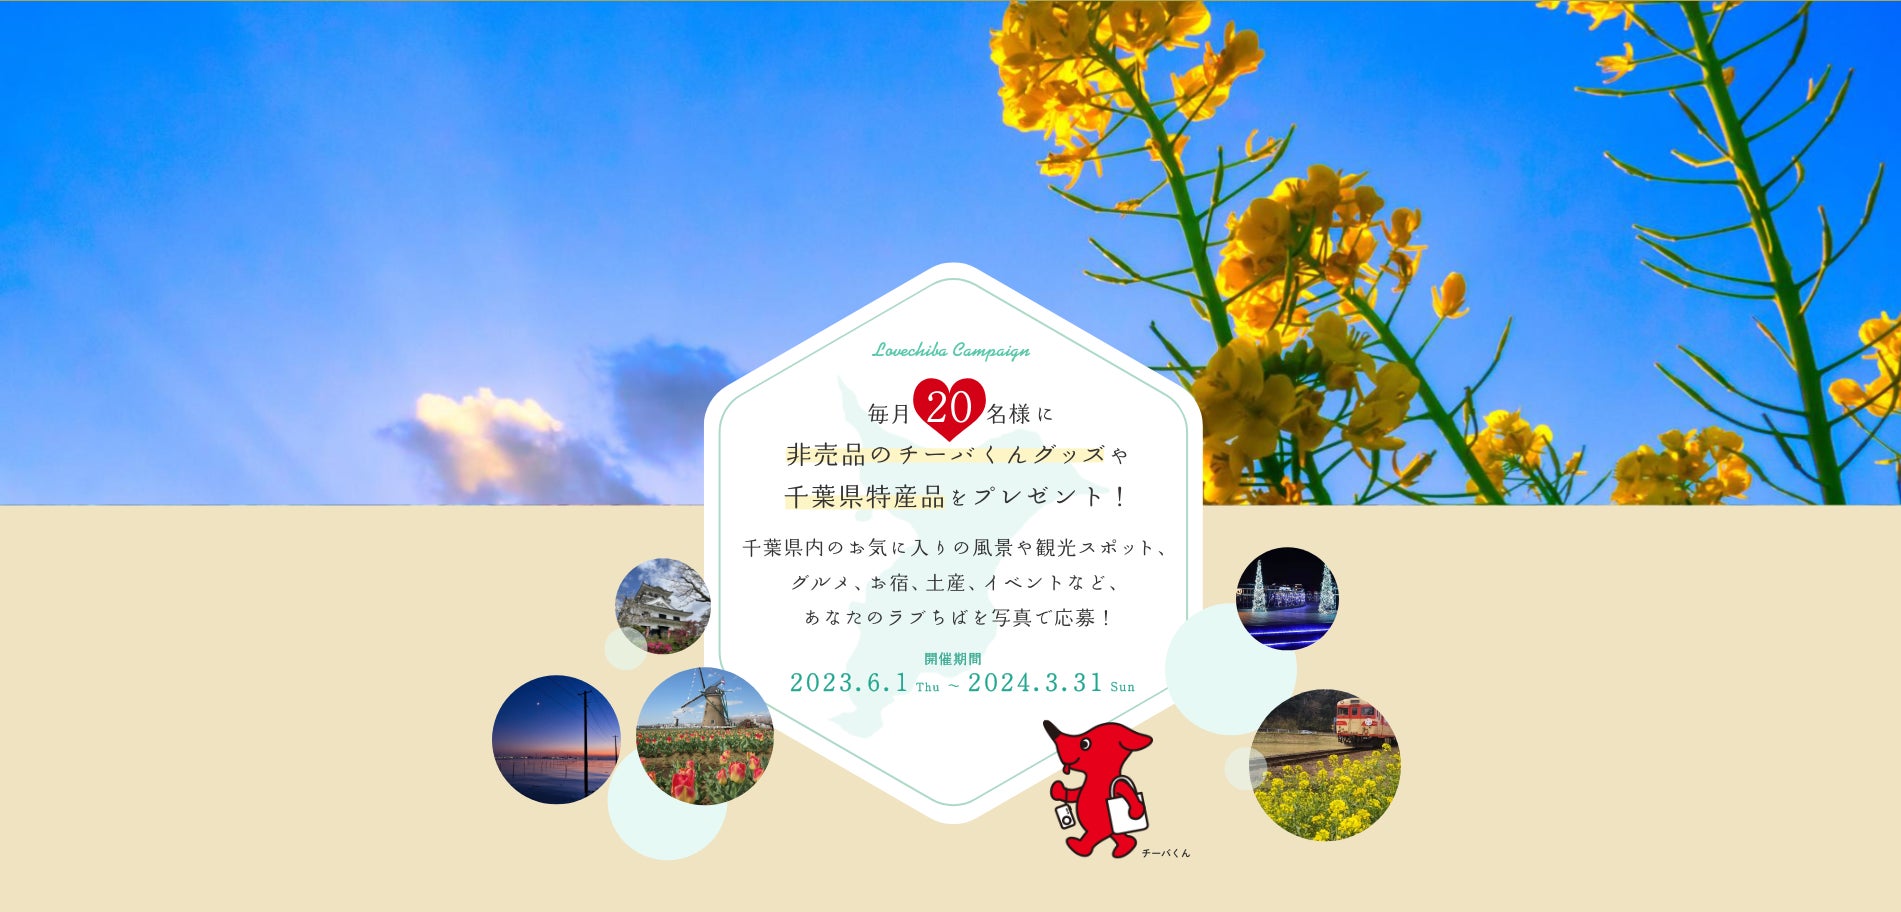 あなたのLOVE♡CHIBA教えてキャンペーンSeason12が終了。写真投稿総数30,000件を超え、千葉県の魅力を広く発信することに貢献